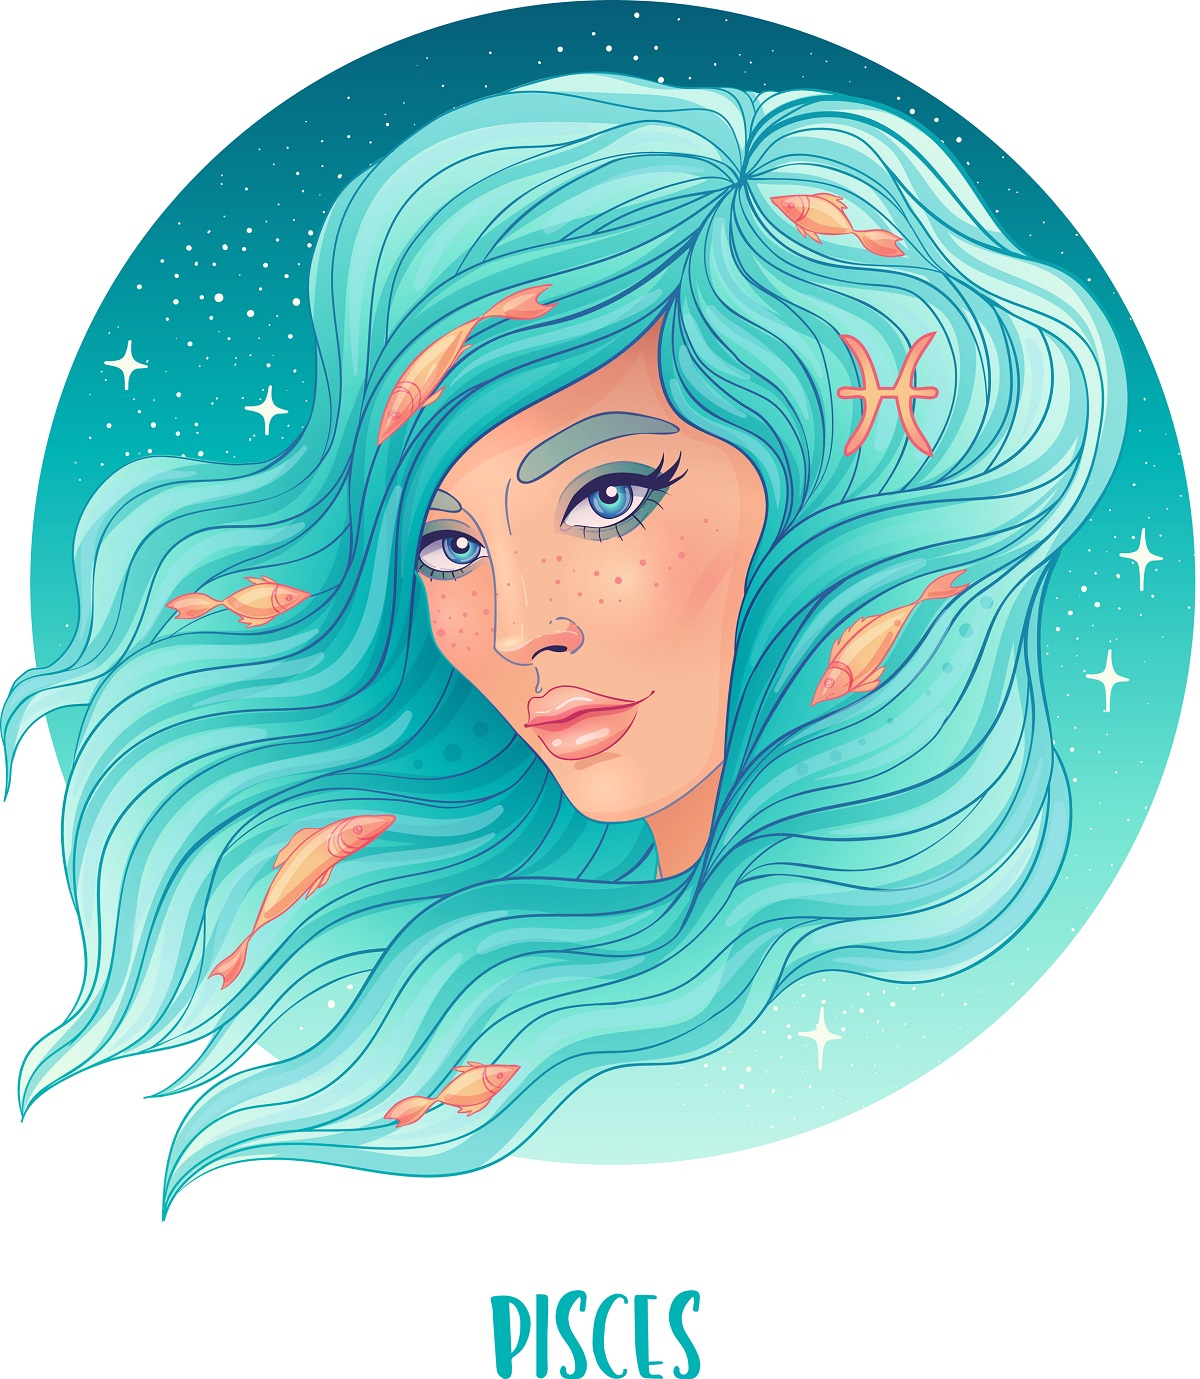 O femeie superbă cu părul lung albastru deschis care are animale marine în păr care este o reprezentare a nativului din zodia Peștilor